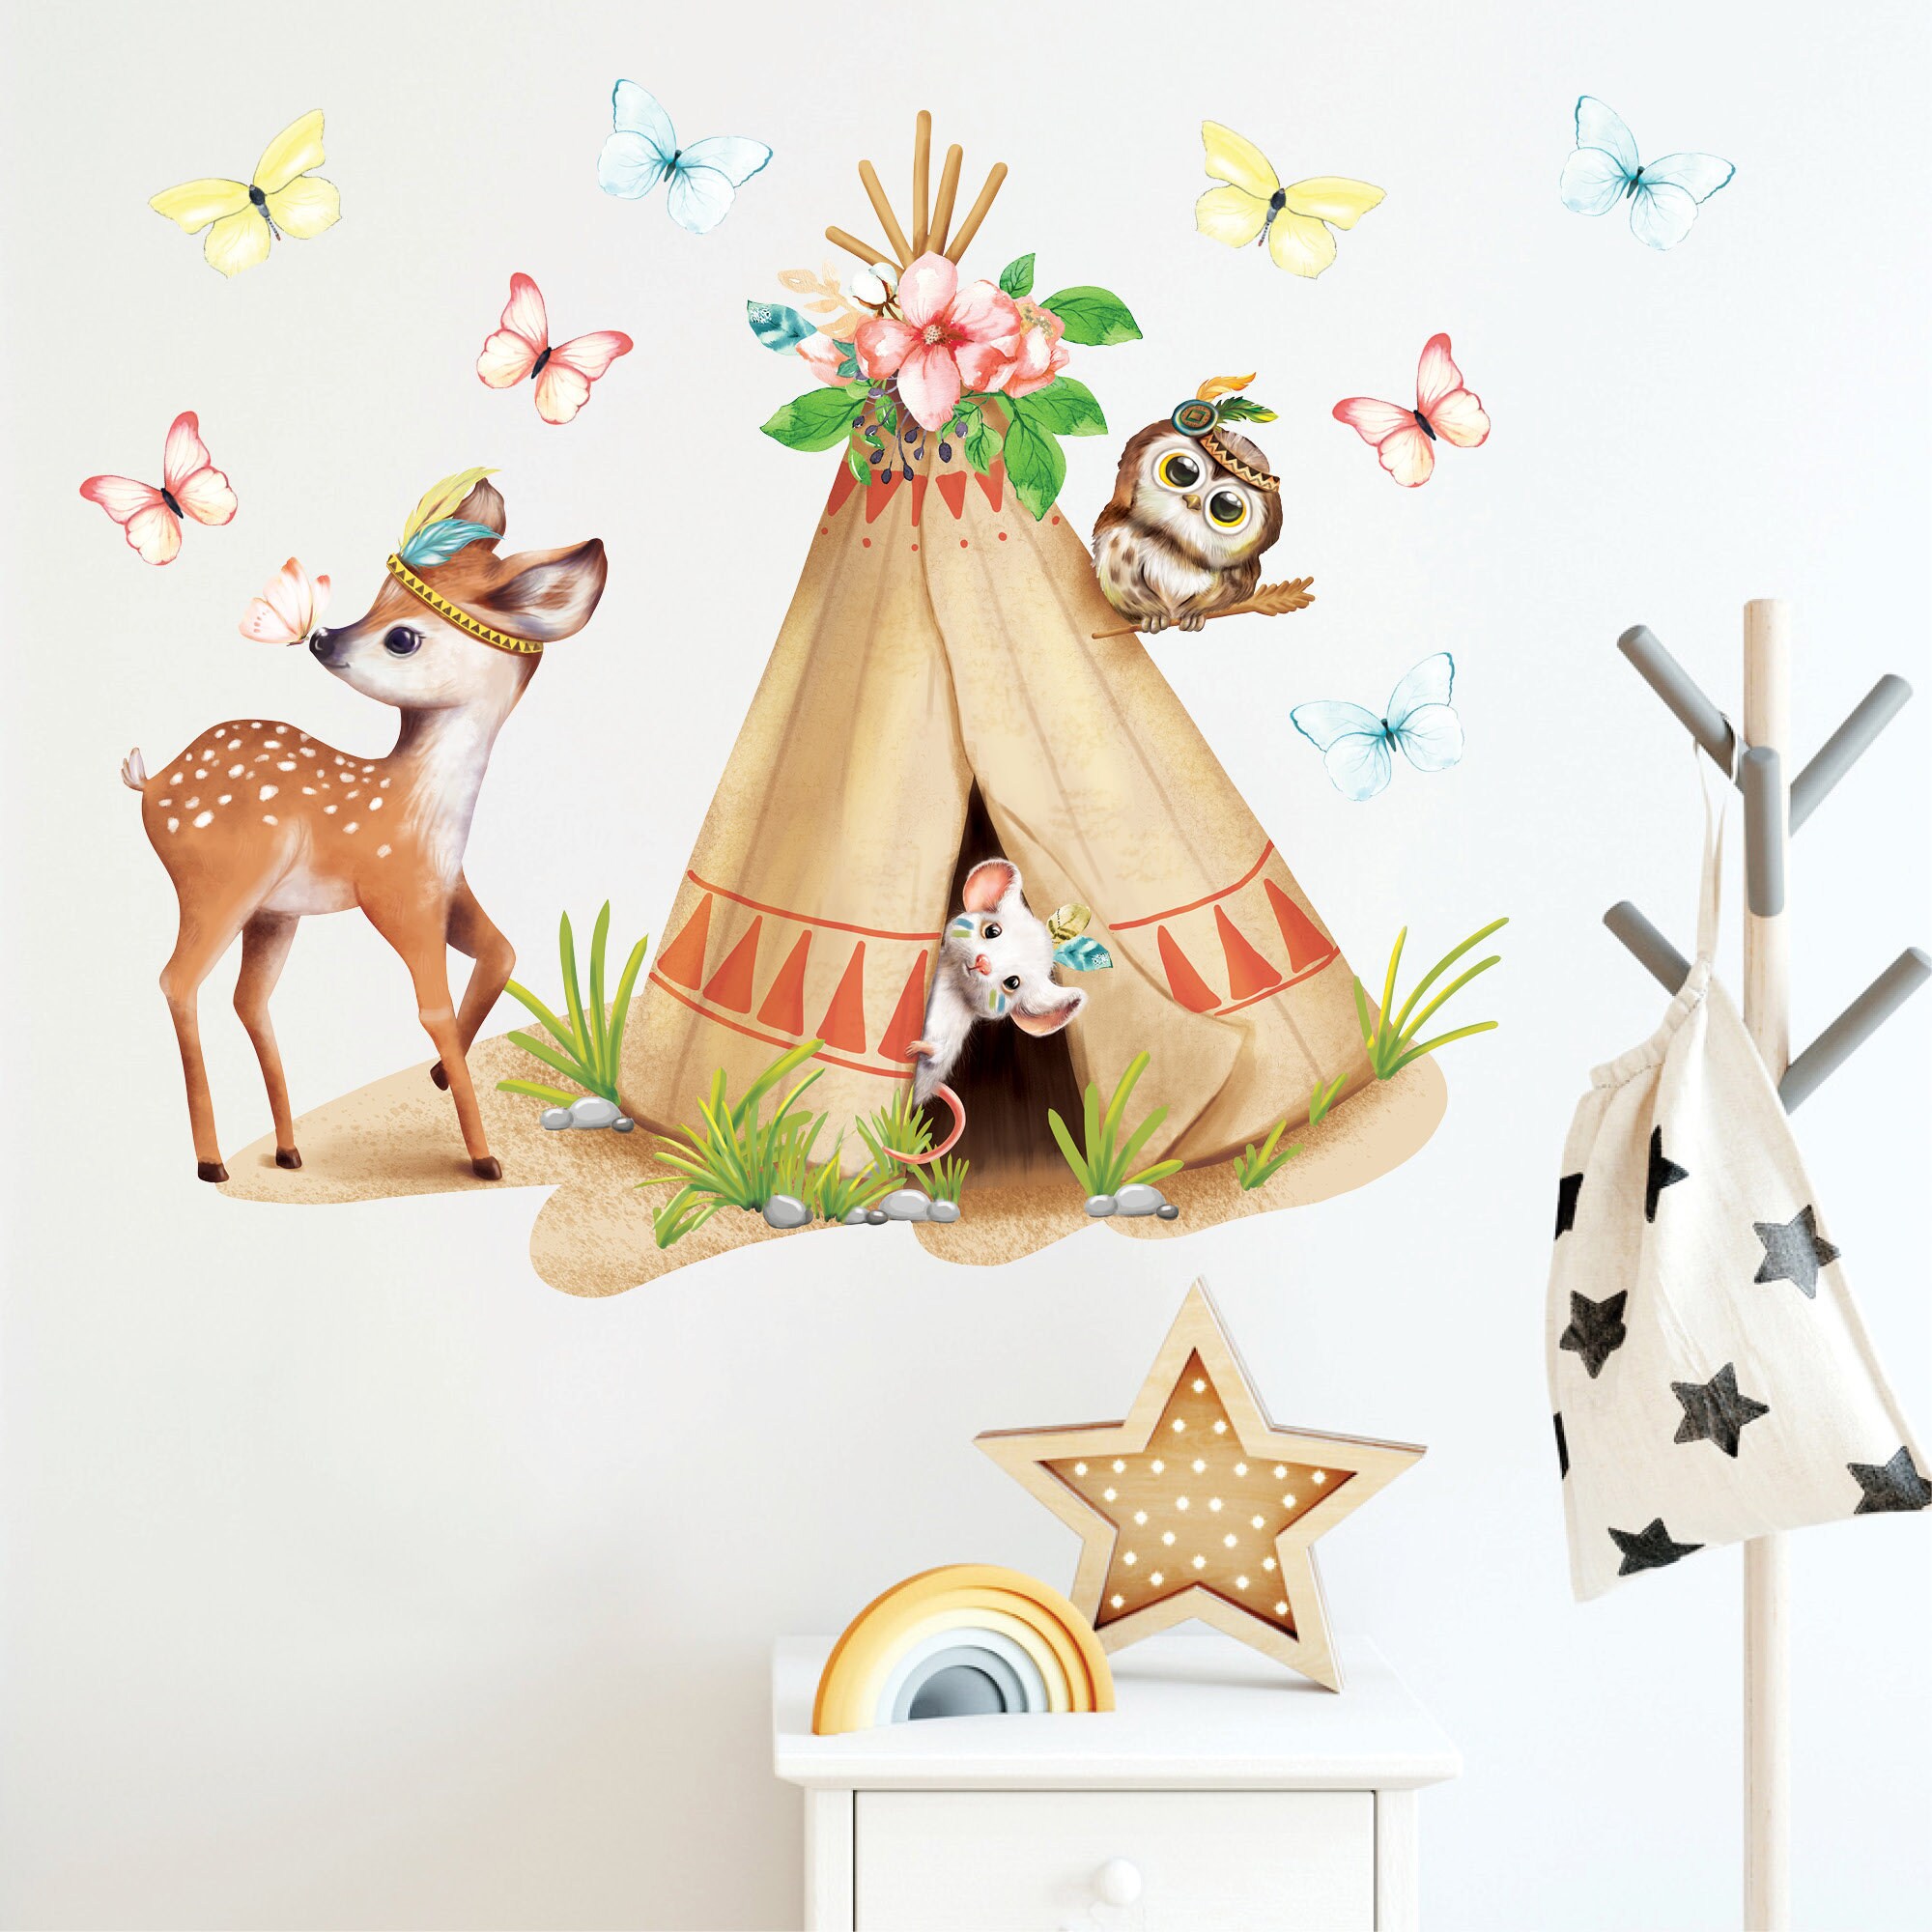 Wandtattoo Kinderzimmer Tipi Indianer Reh Zelt Eule Schmetterlinge Dekoration Babyzimmer